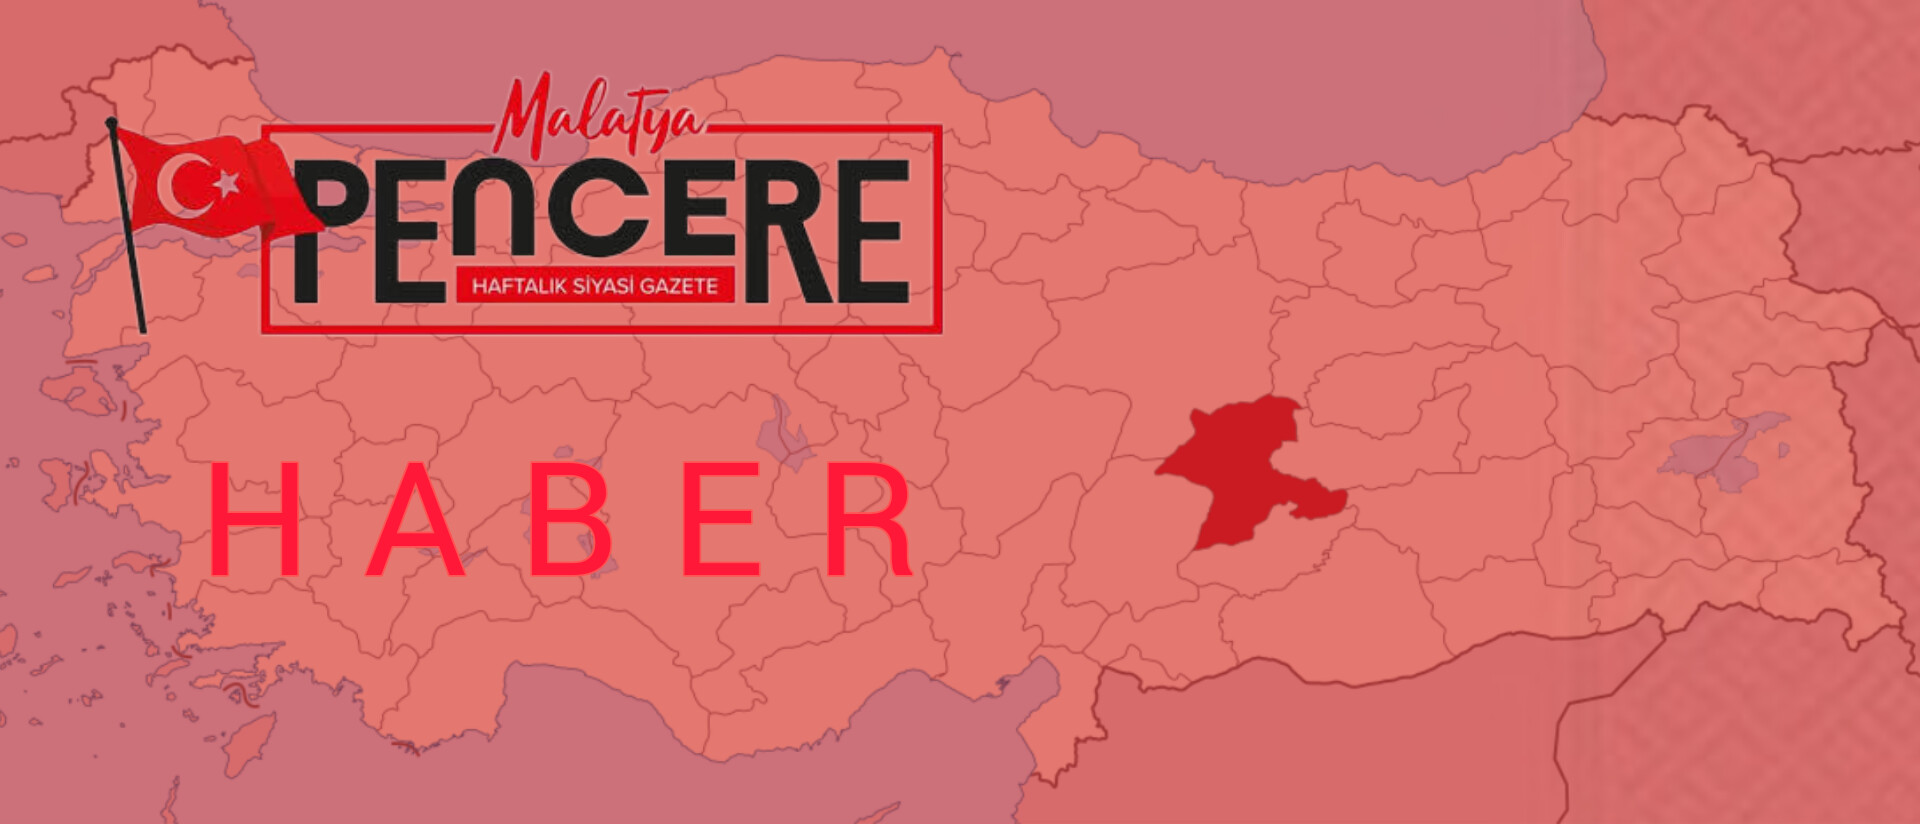 İYİ Parti’nin 5. Olağanüstü Kurultayında başkanlık seçimi için ilk tur tamamlandı. Adaylardan Koray Aydın 472, Müsavat Dervişoğlu 370, Mehmet Tolga Akalın 327 ve Günay Kodaz 2 oy aldı. Seçimlere ikinci tur ile devam edilecek.